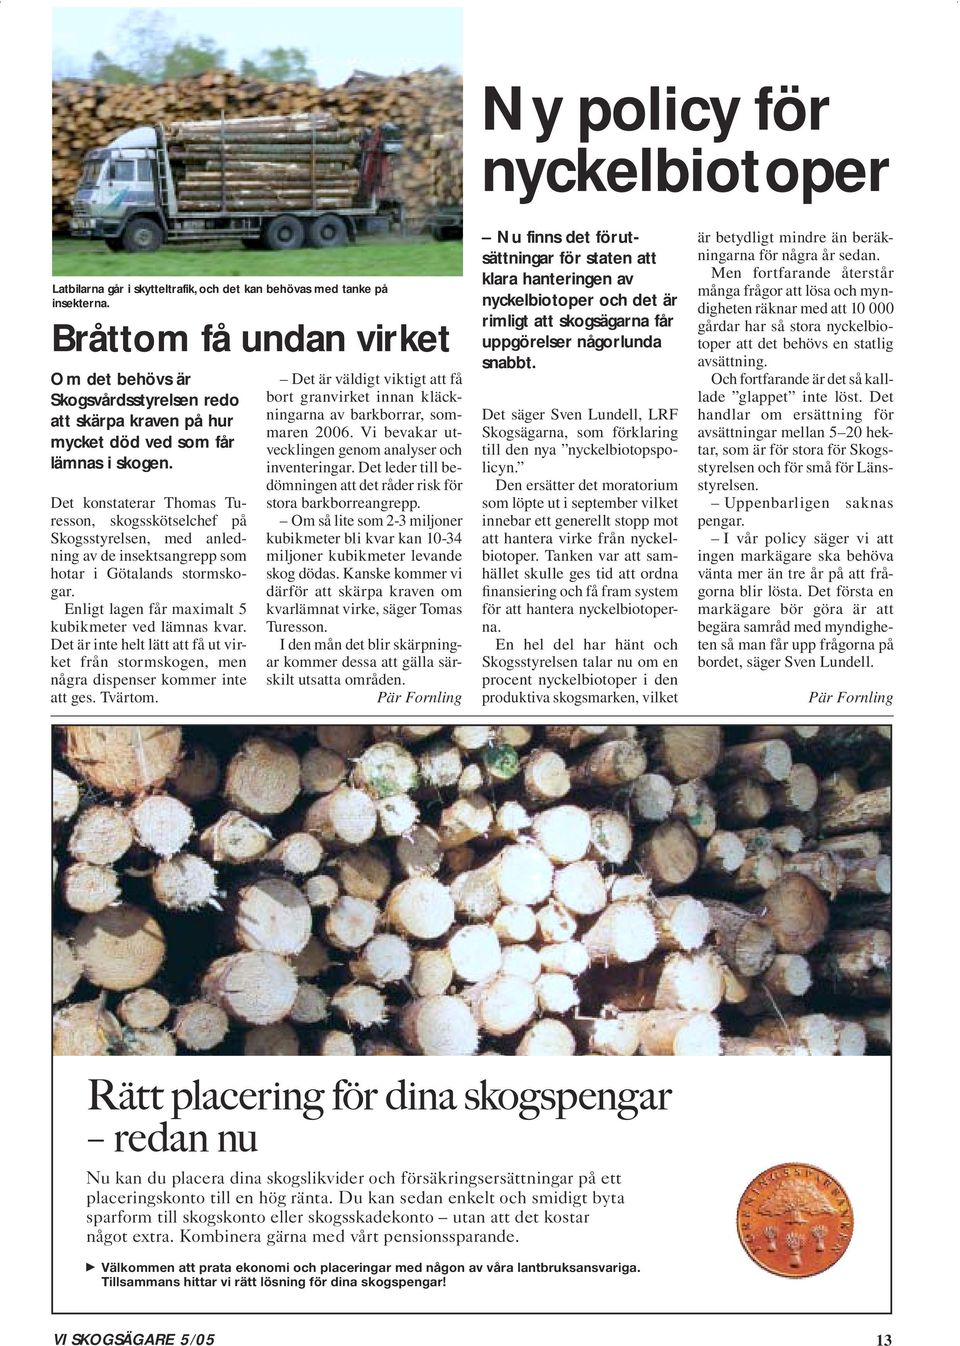 Det konstaterar Thomas Turesson, skogsskötselchef på Skogsstyrelsen, med anledning av de insektsangrepp som hotar i Götalands stormskogar. Enligt lagen får maximalt 5 kubikmeter ved lämnas kvar.